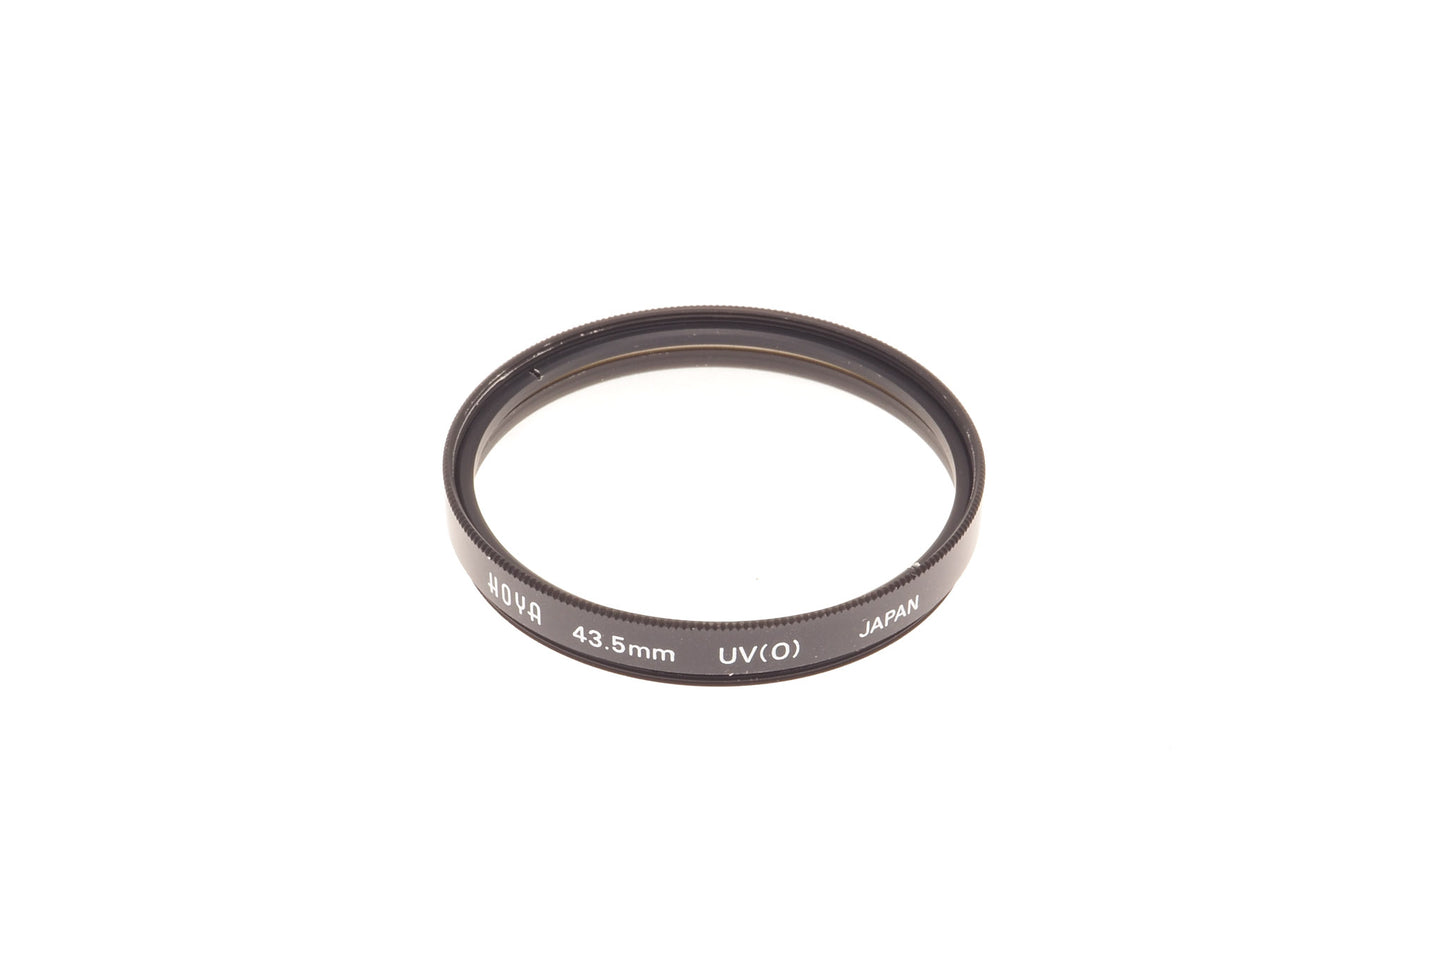 Hoya 43.5mm UV Filter - Accessory